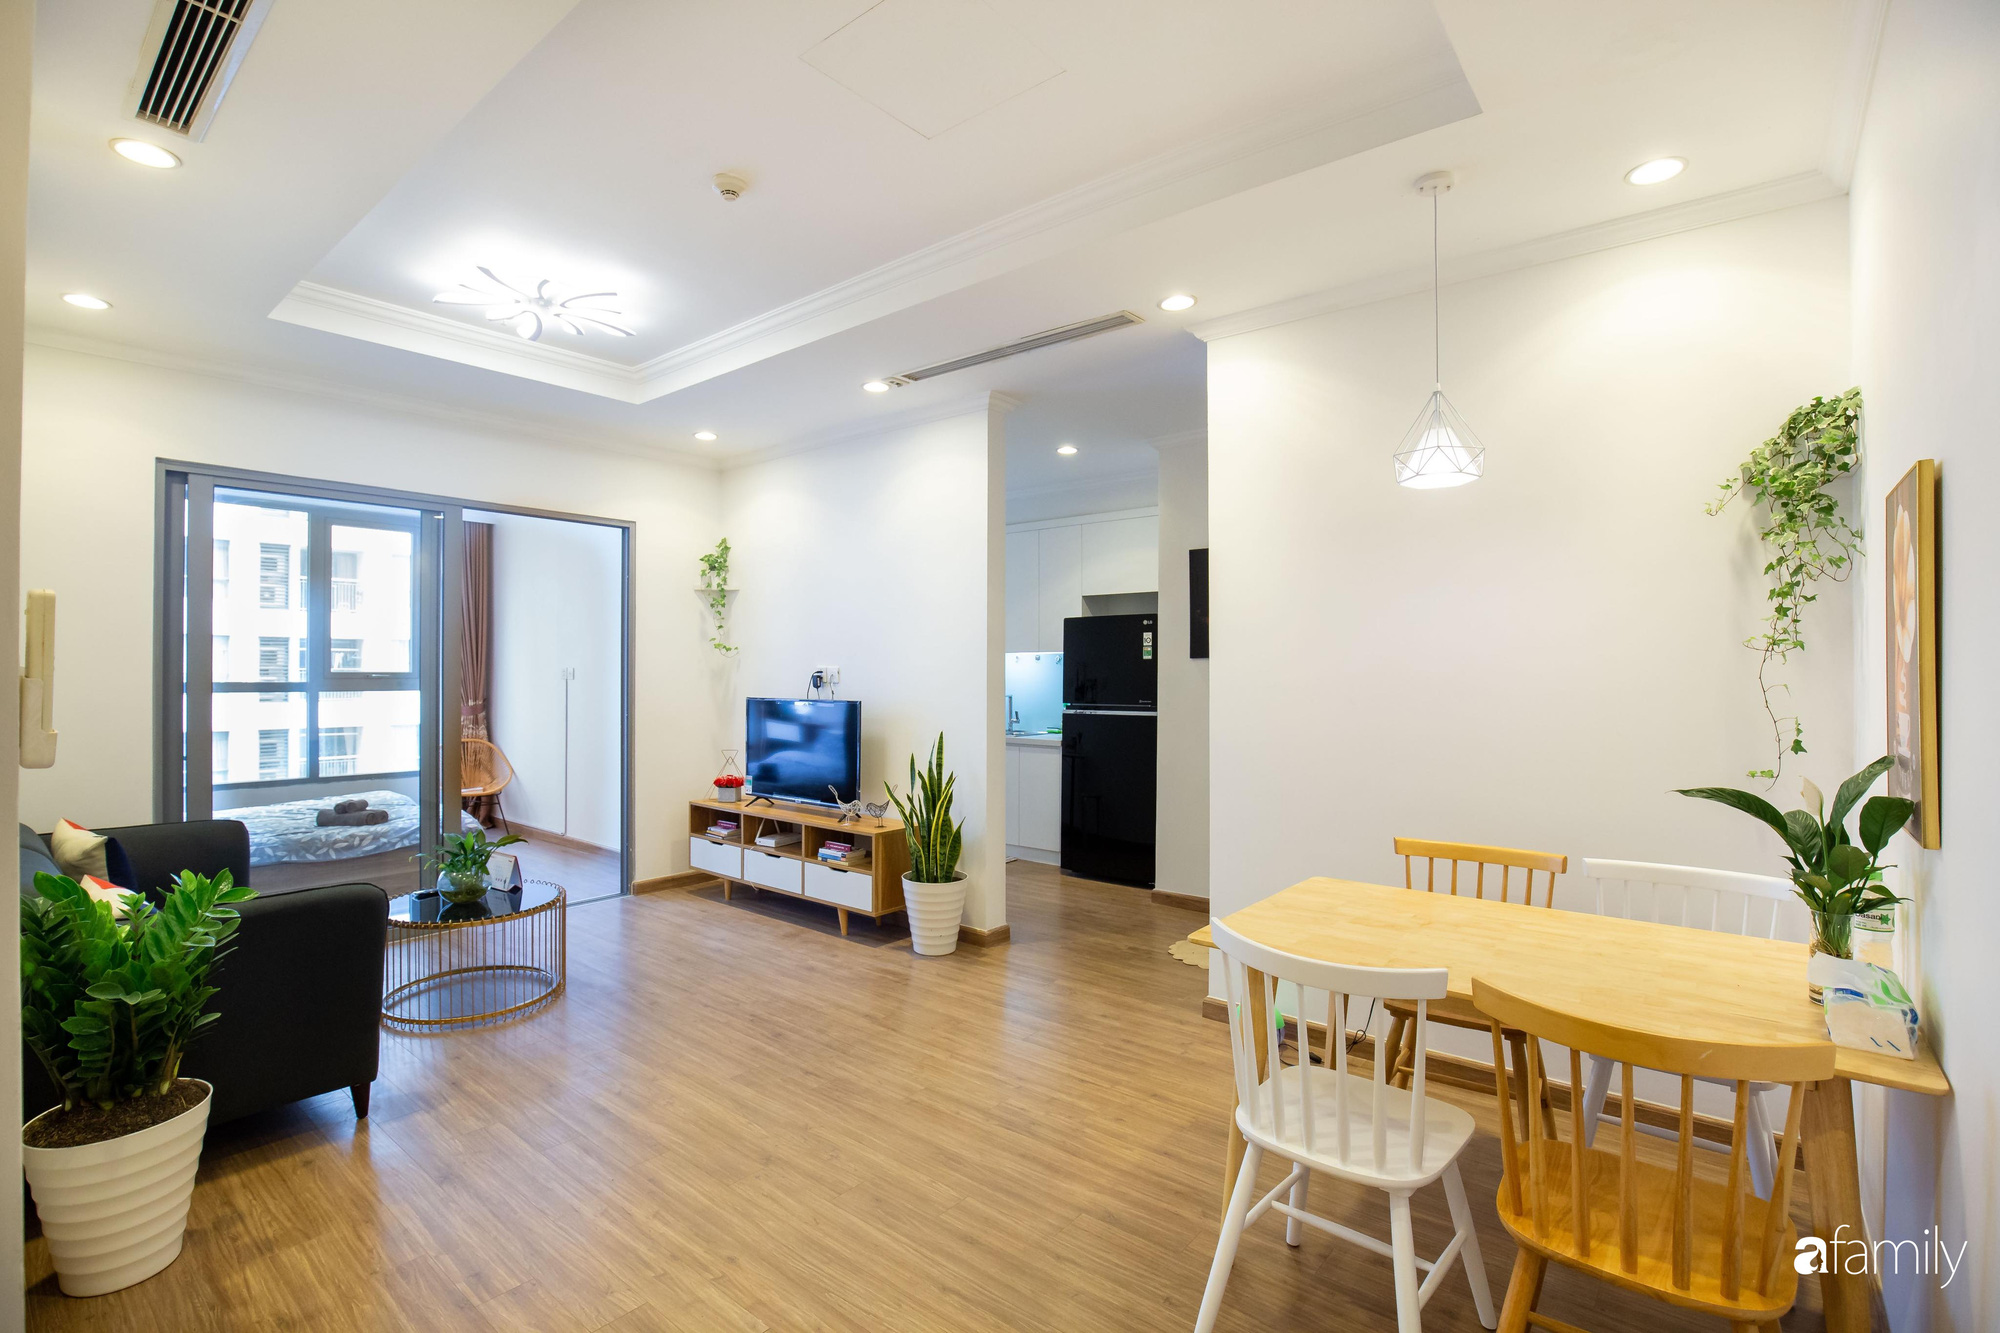 Thiết kế đơn giản với nội thất tiện nghi, căn hộ 53m2 trên tầng cao khiến nhiều người ao ước sở hữu ở Hà Nội - Ảnh 2.